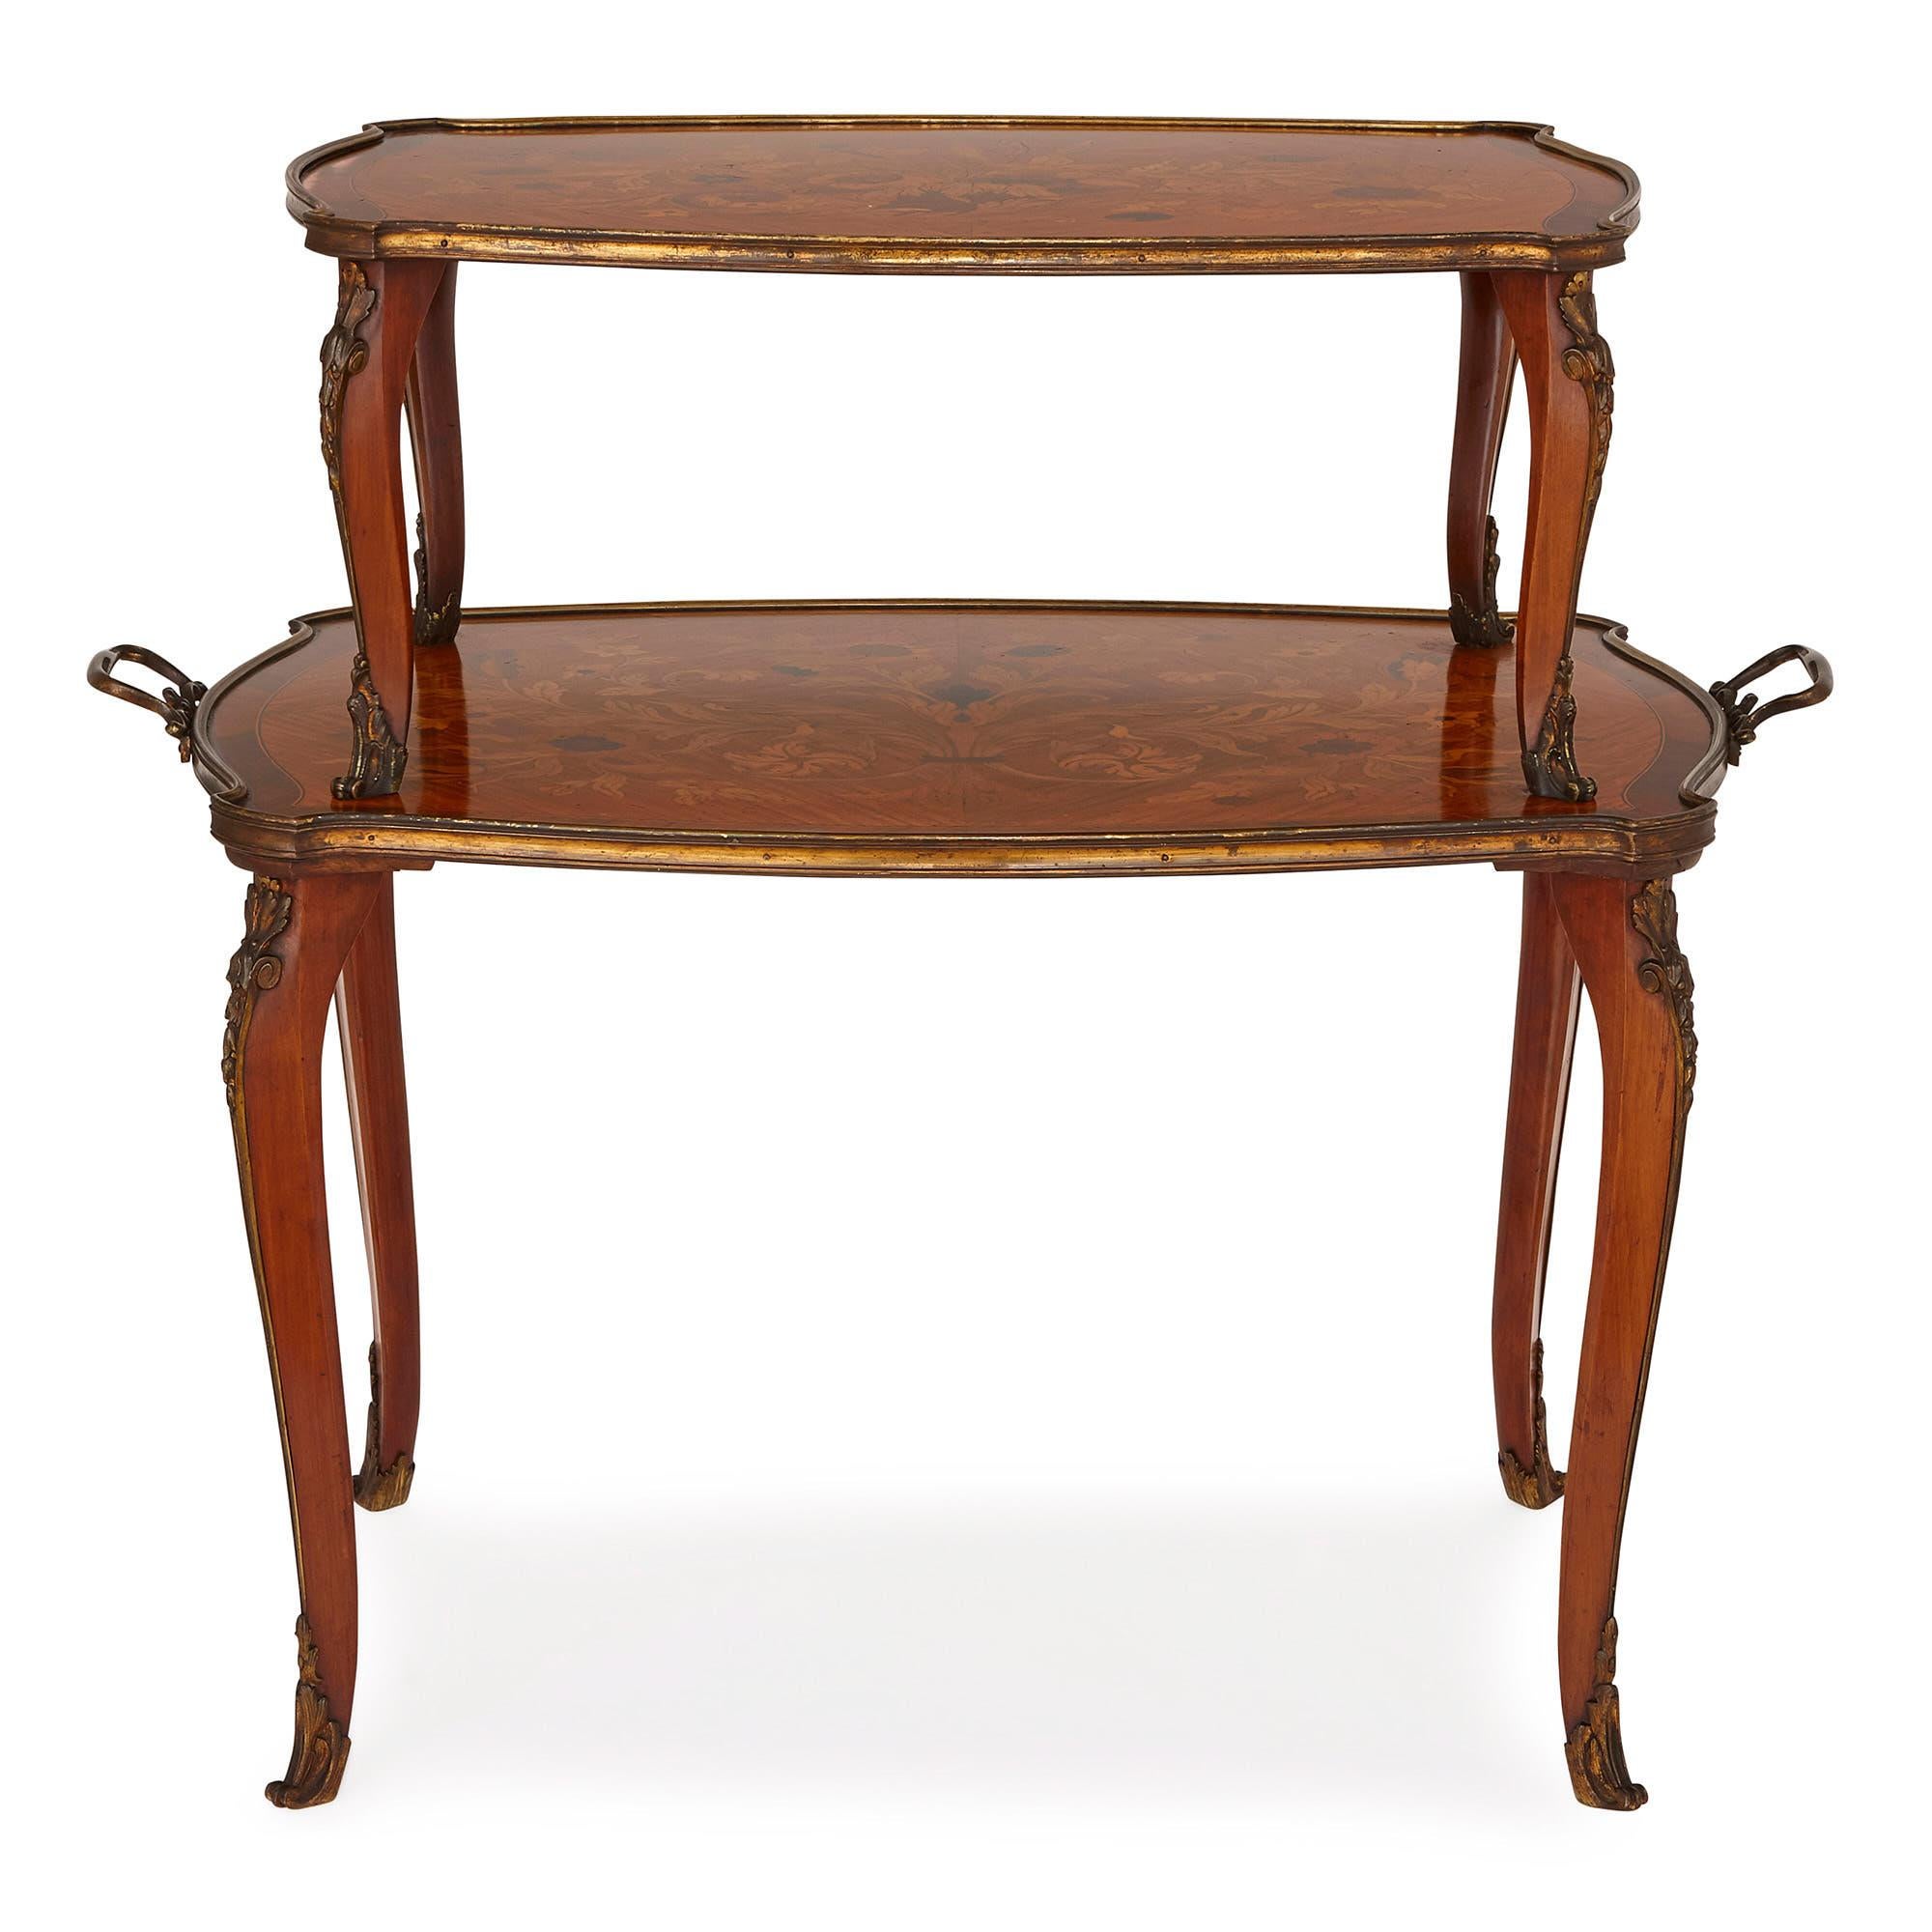 Dieser wunderschöne Tisch wurde im England der viktorianischen Zeit von den renommierten Tischlern Edwards & Roberts entworfen. Das Unternehmen hatte seinen Sitz in London, wo es sich einen Namen mit der Herstellung hochwertiger, modischer Stücke im